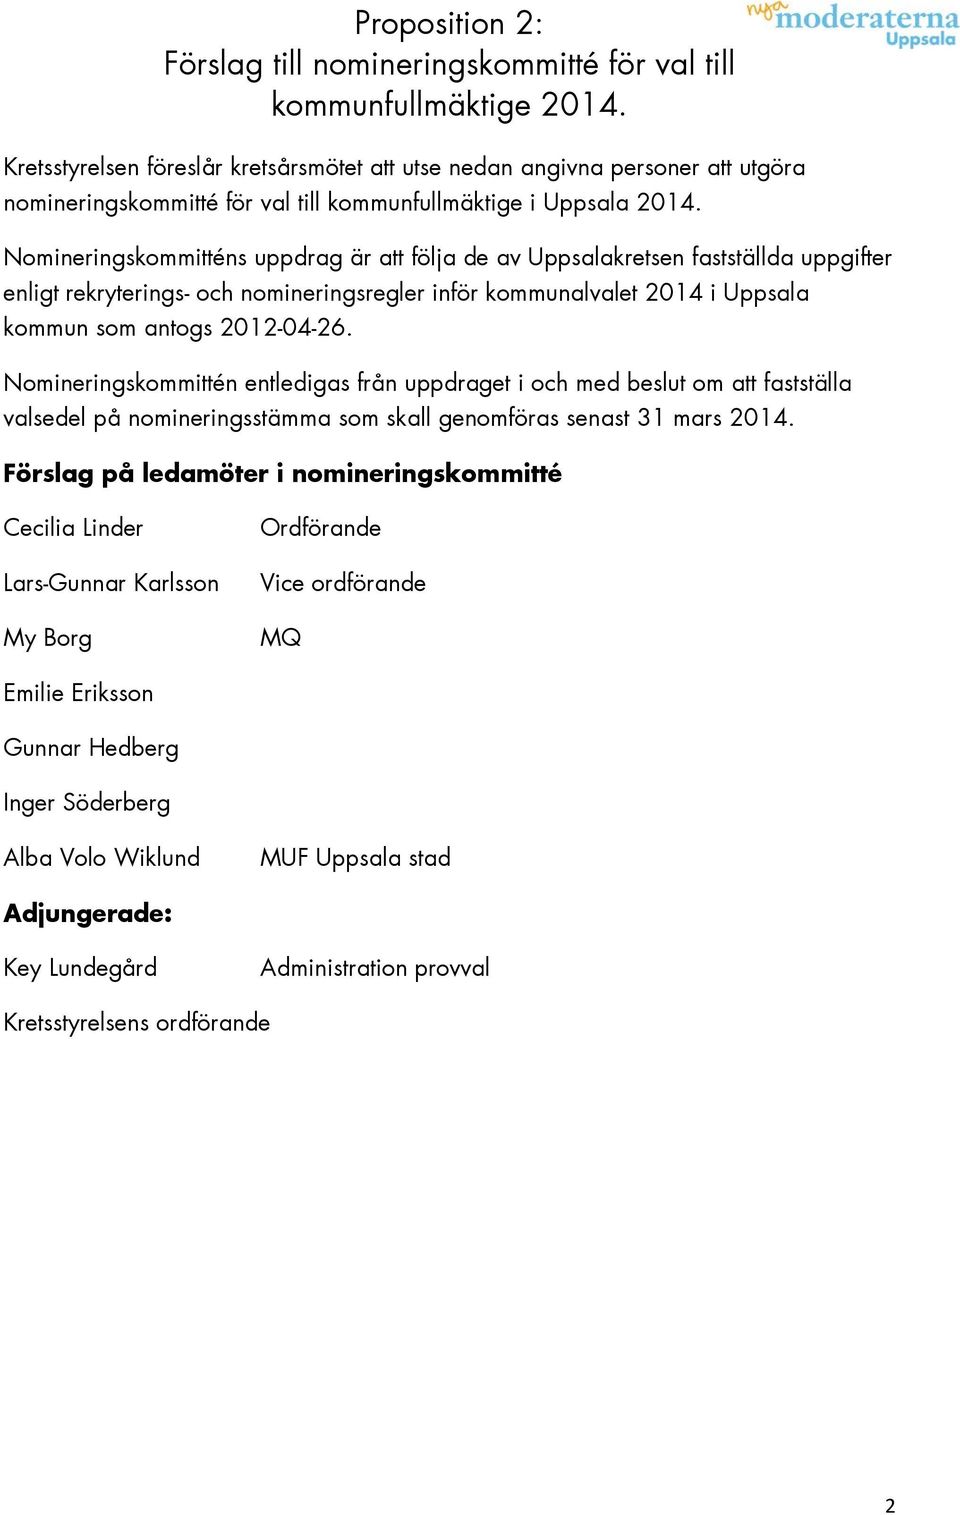 Nomineringskommitténs uppdrag är att följa de av Uppsalakretsen fastställda uppgifter enligt rekryterings- och nomineringsregler inför kommunalvalet 2014 i Uppsala kommun som antogs 2012-04-26.